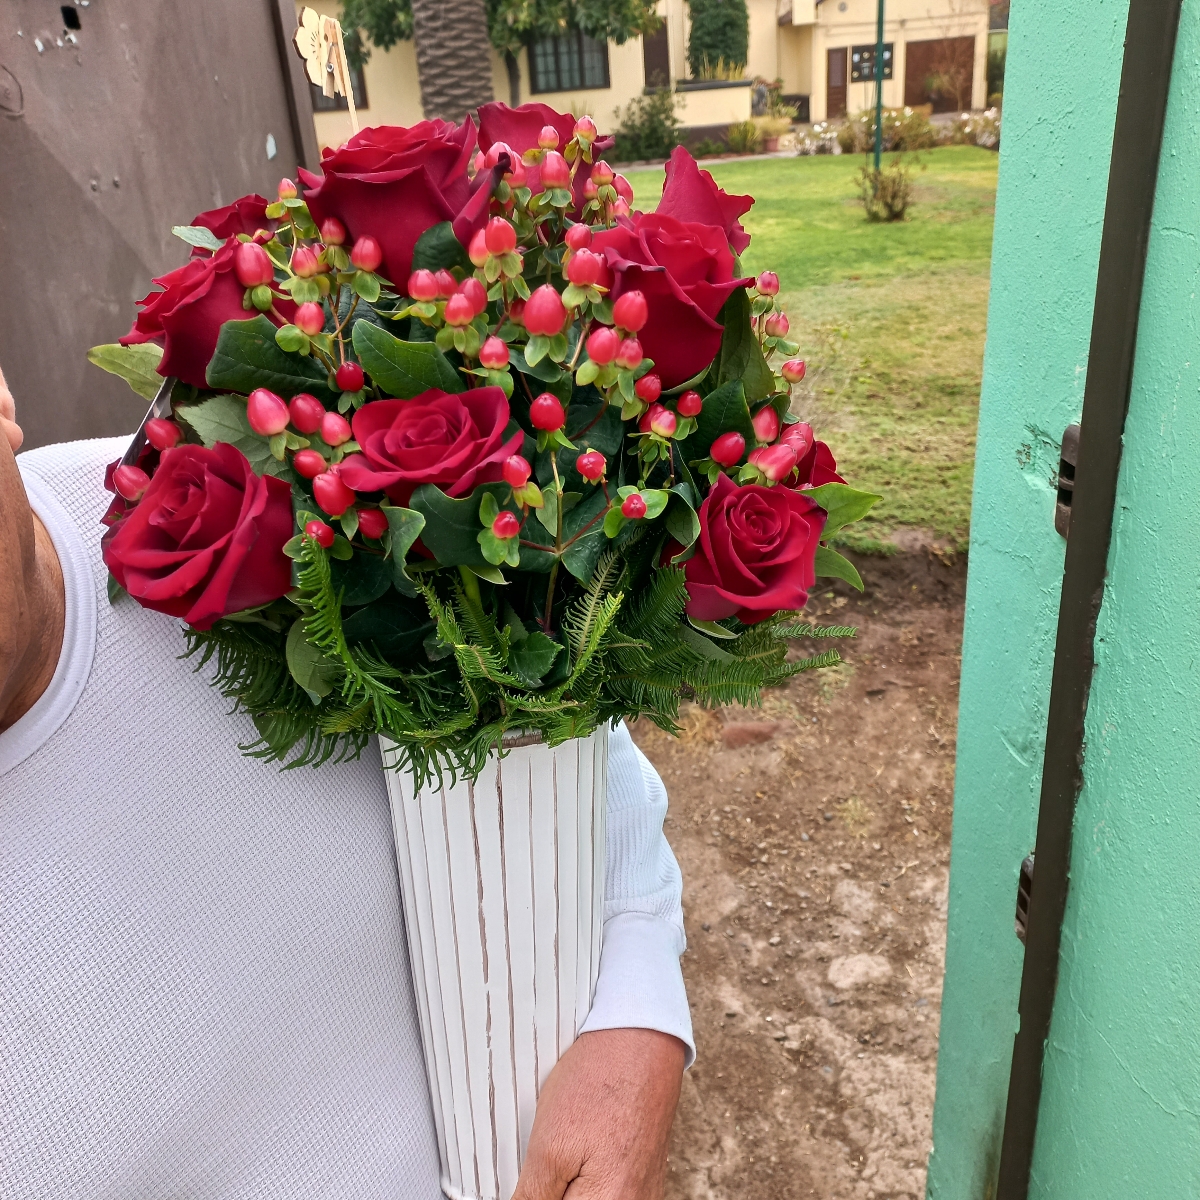 Tú y Yo - Arreglo floral con rosas rojas e hypericum rojo - Pedido 255209